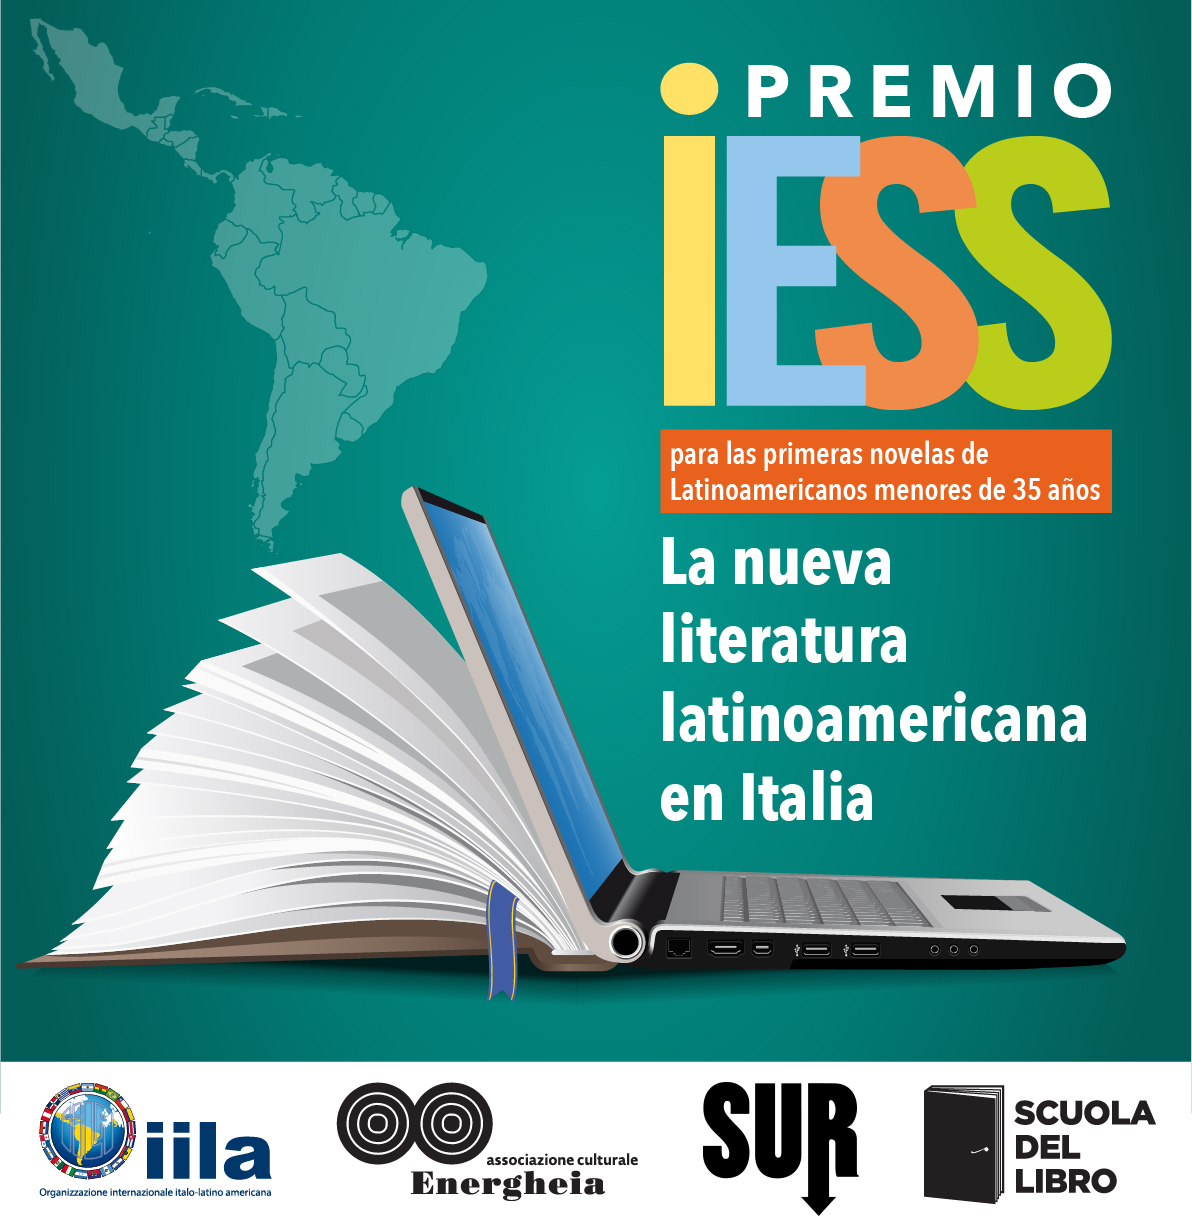 Anunciados los finalistas de la primera edición del Premio IESS a la primera “Opera prima” de autores latinoamericanos menores de 35 años